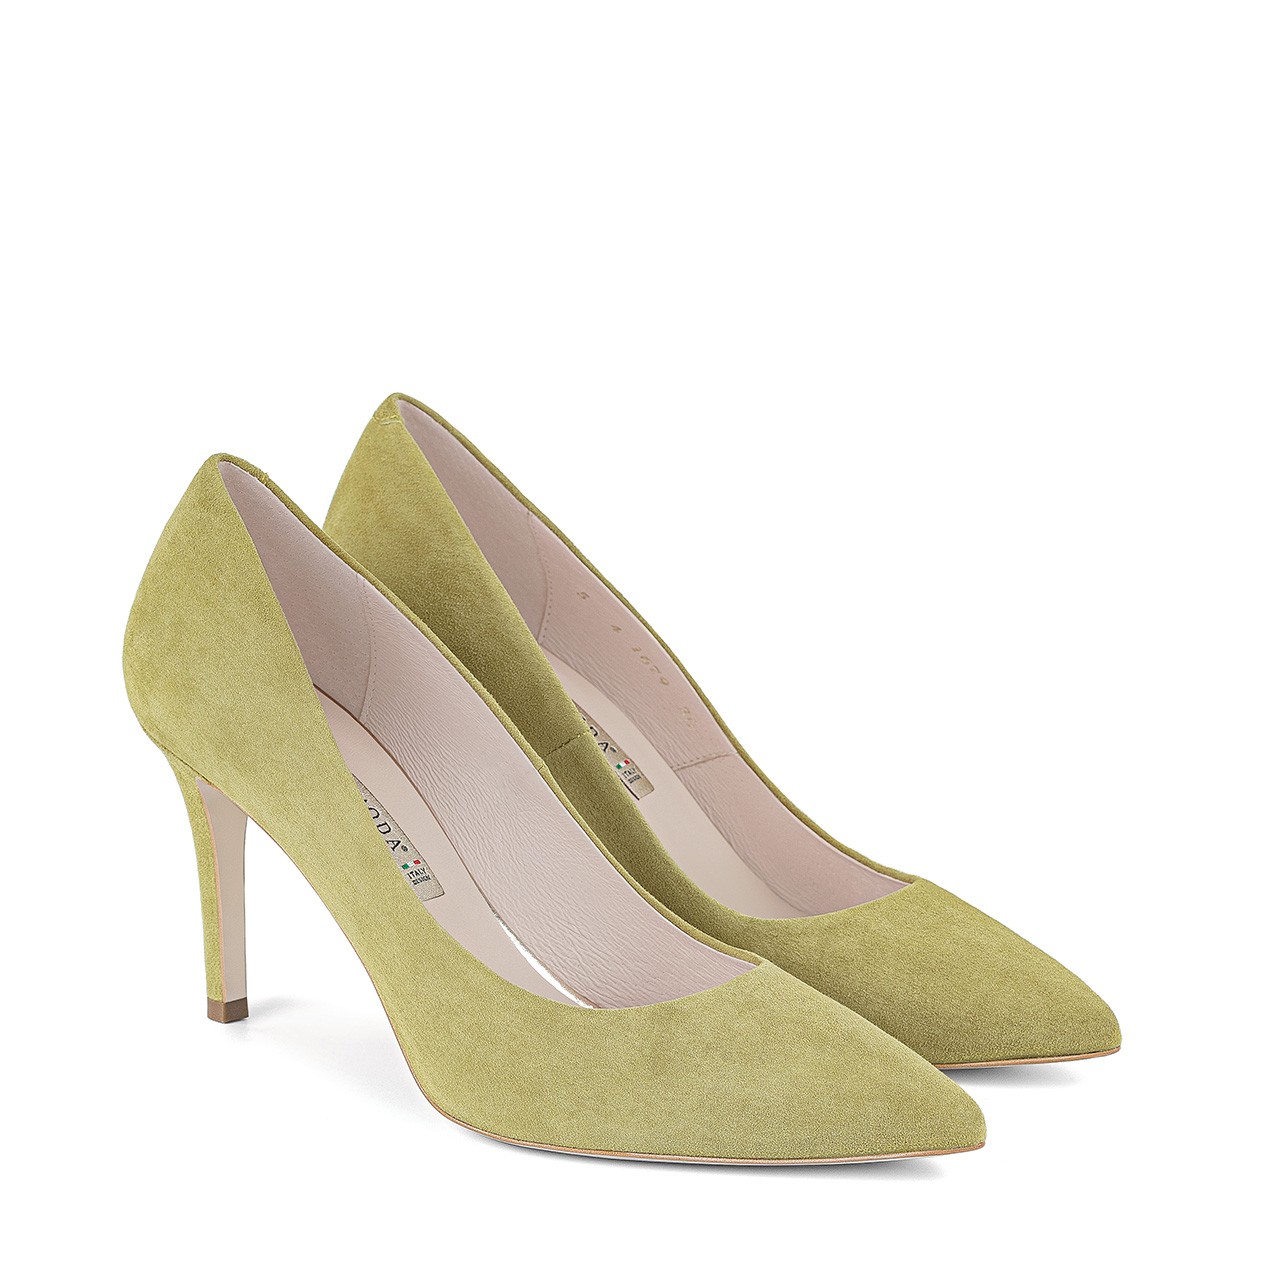 ASOS DESIGN Prosper embellished slingback high heeled shoes in lime | ASOS